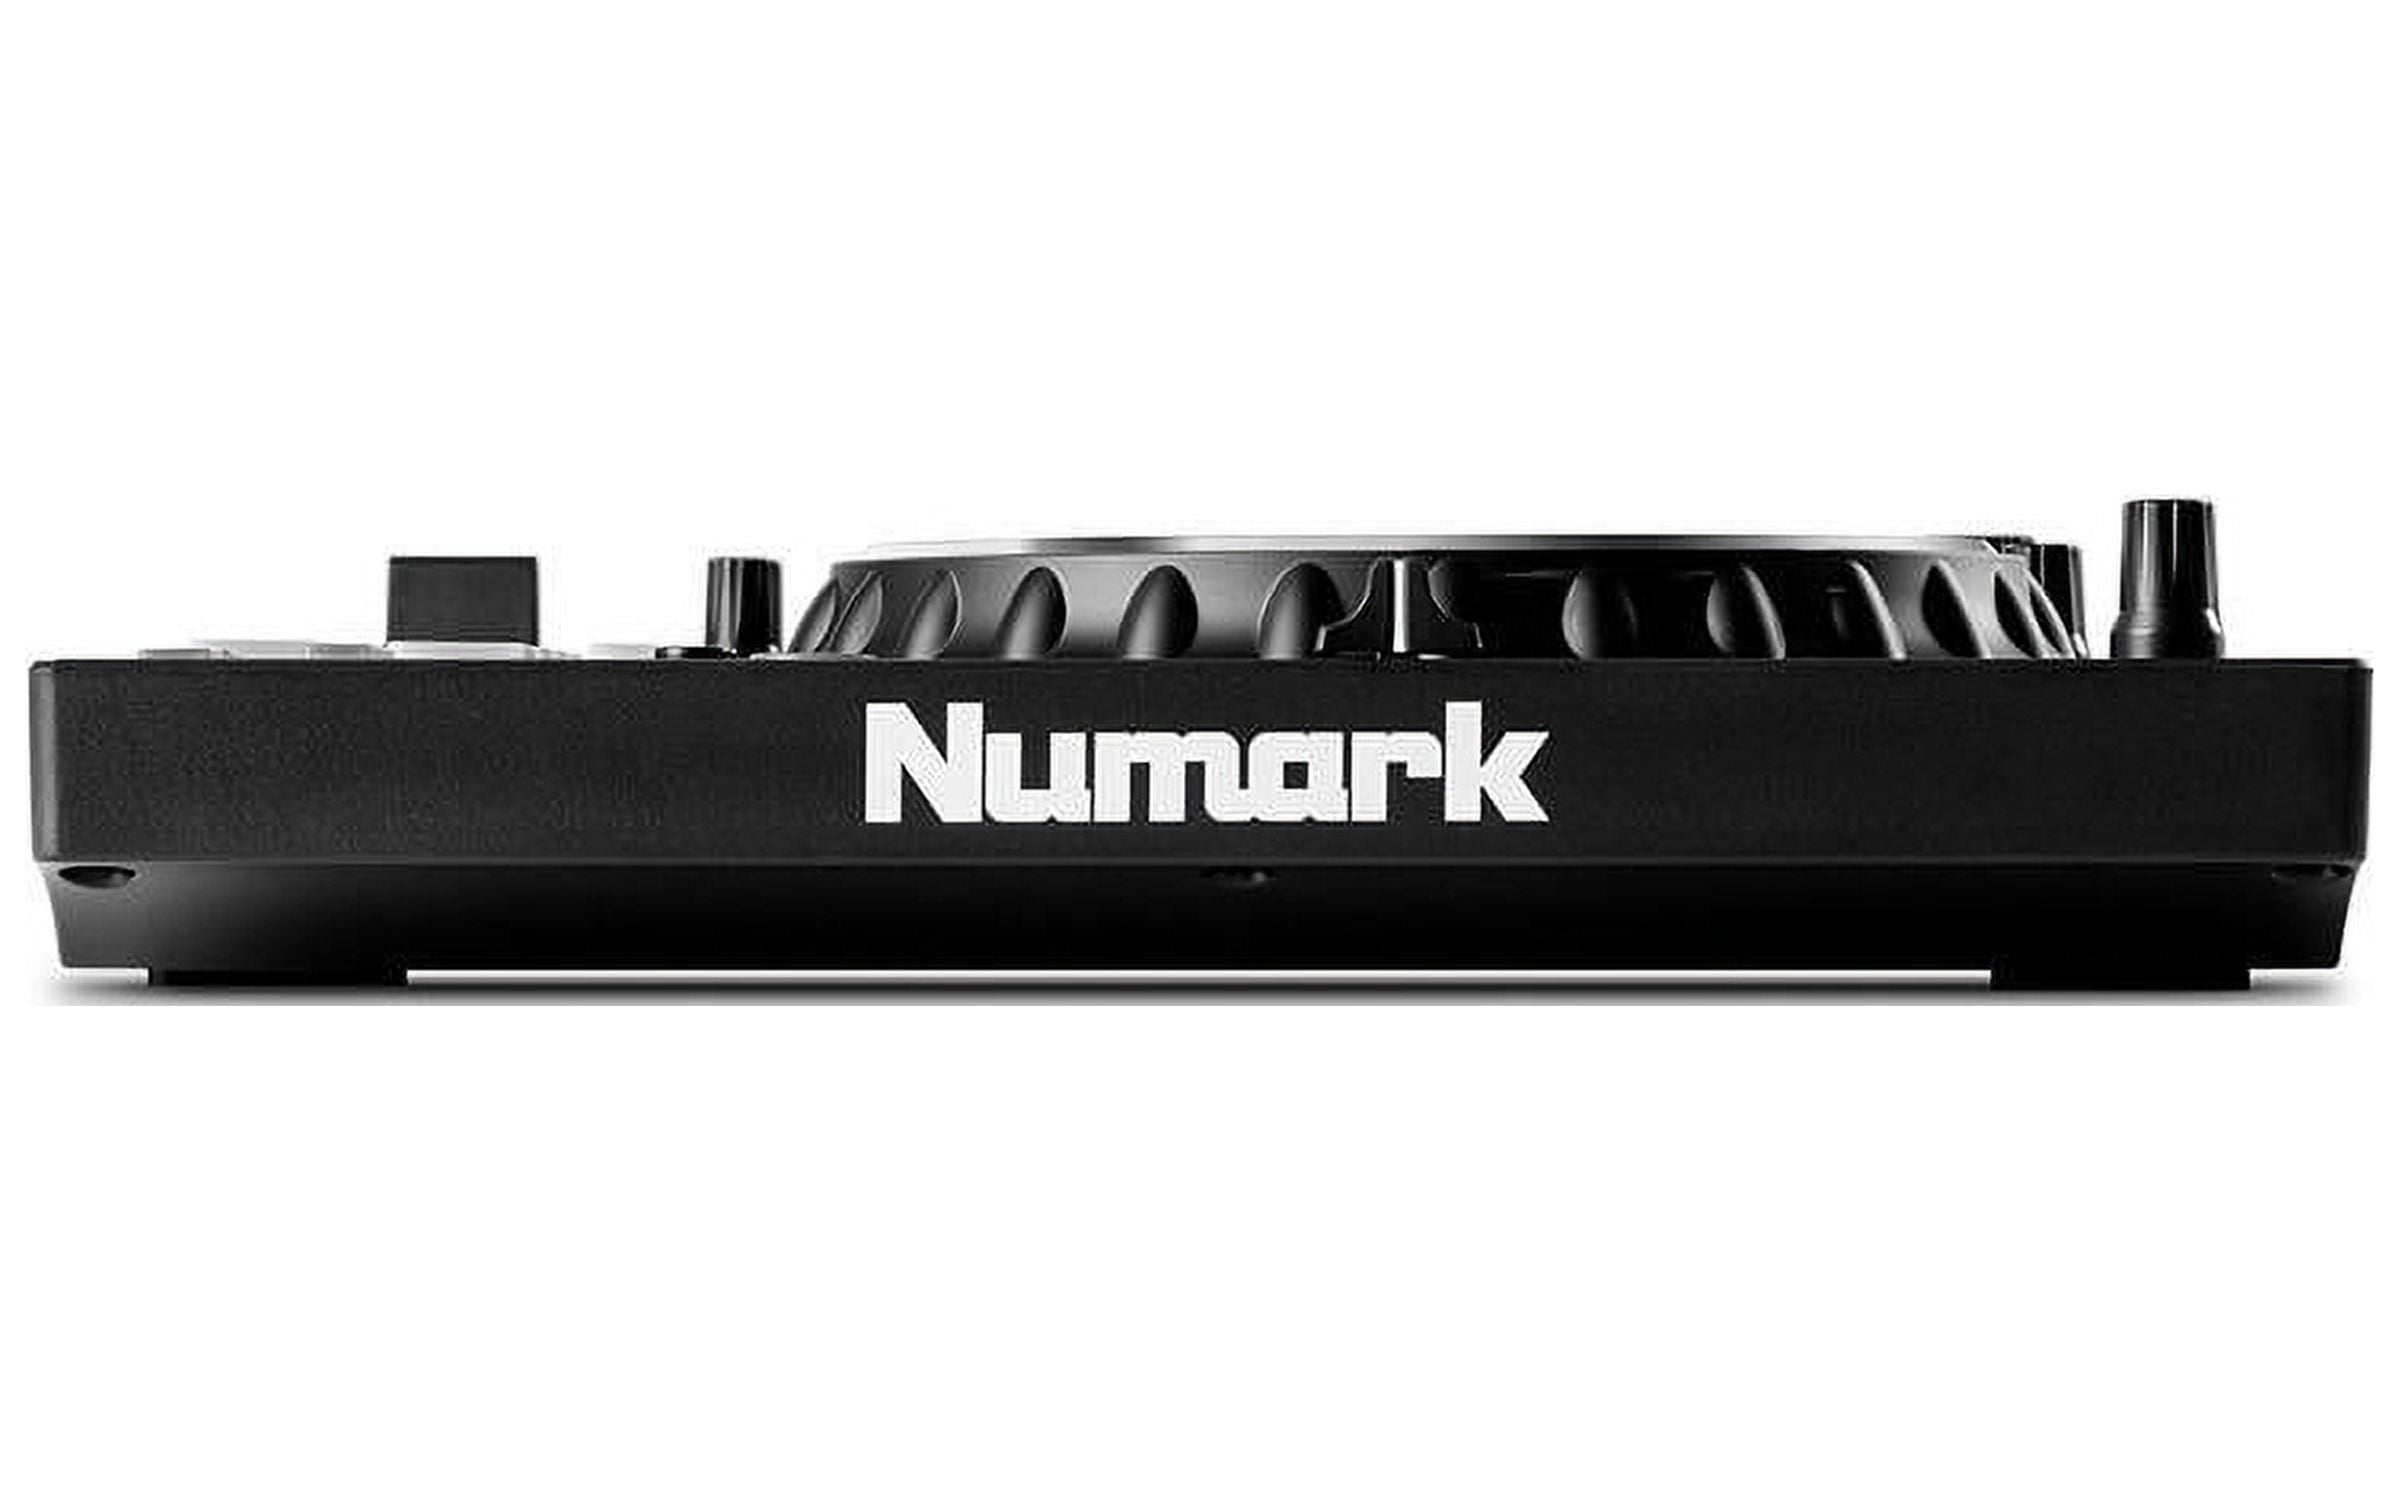 Numark Mixtrack Platinum FX - Contrôleur DJ 4 decks, table de mixage, carte  son intégrée, platines DJ tactiles avec écran et large palette d'effets